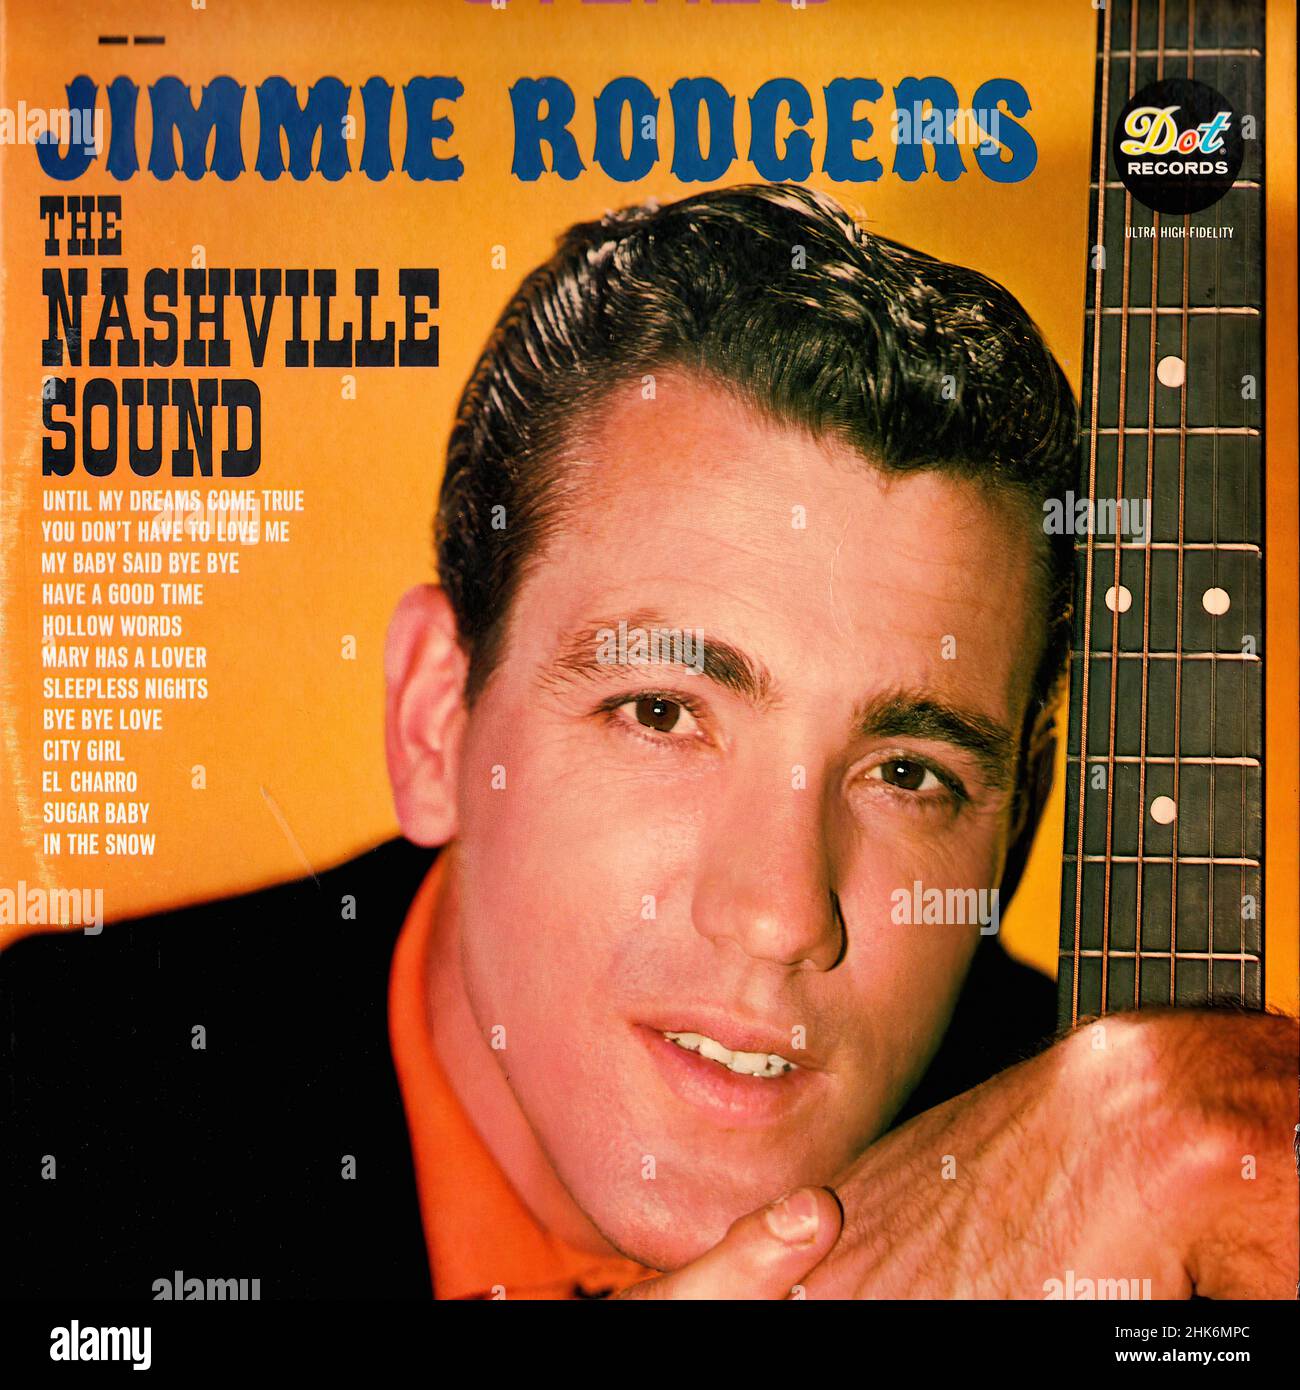 Vintage vinilo record cover - Rodgers, Jimmie - The Nashville Sound - US - 1966 Foto de stock